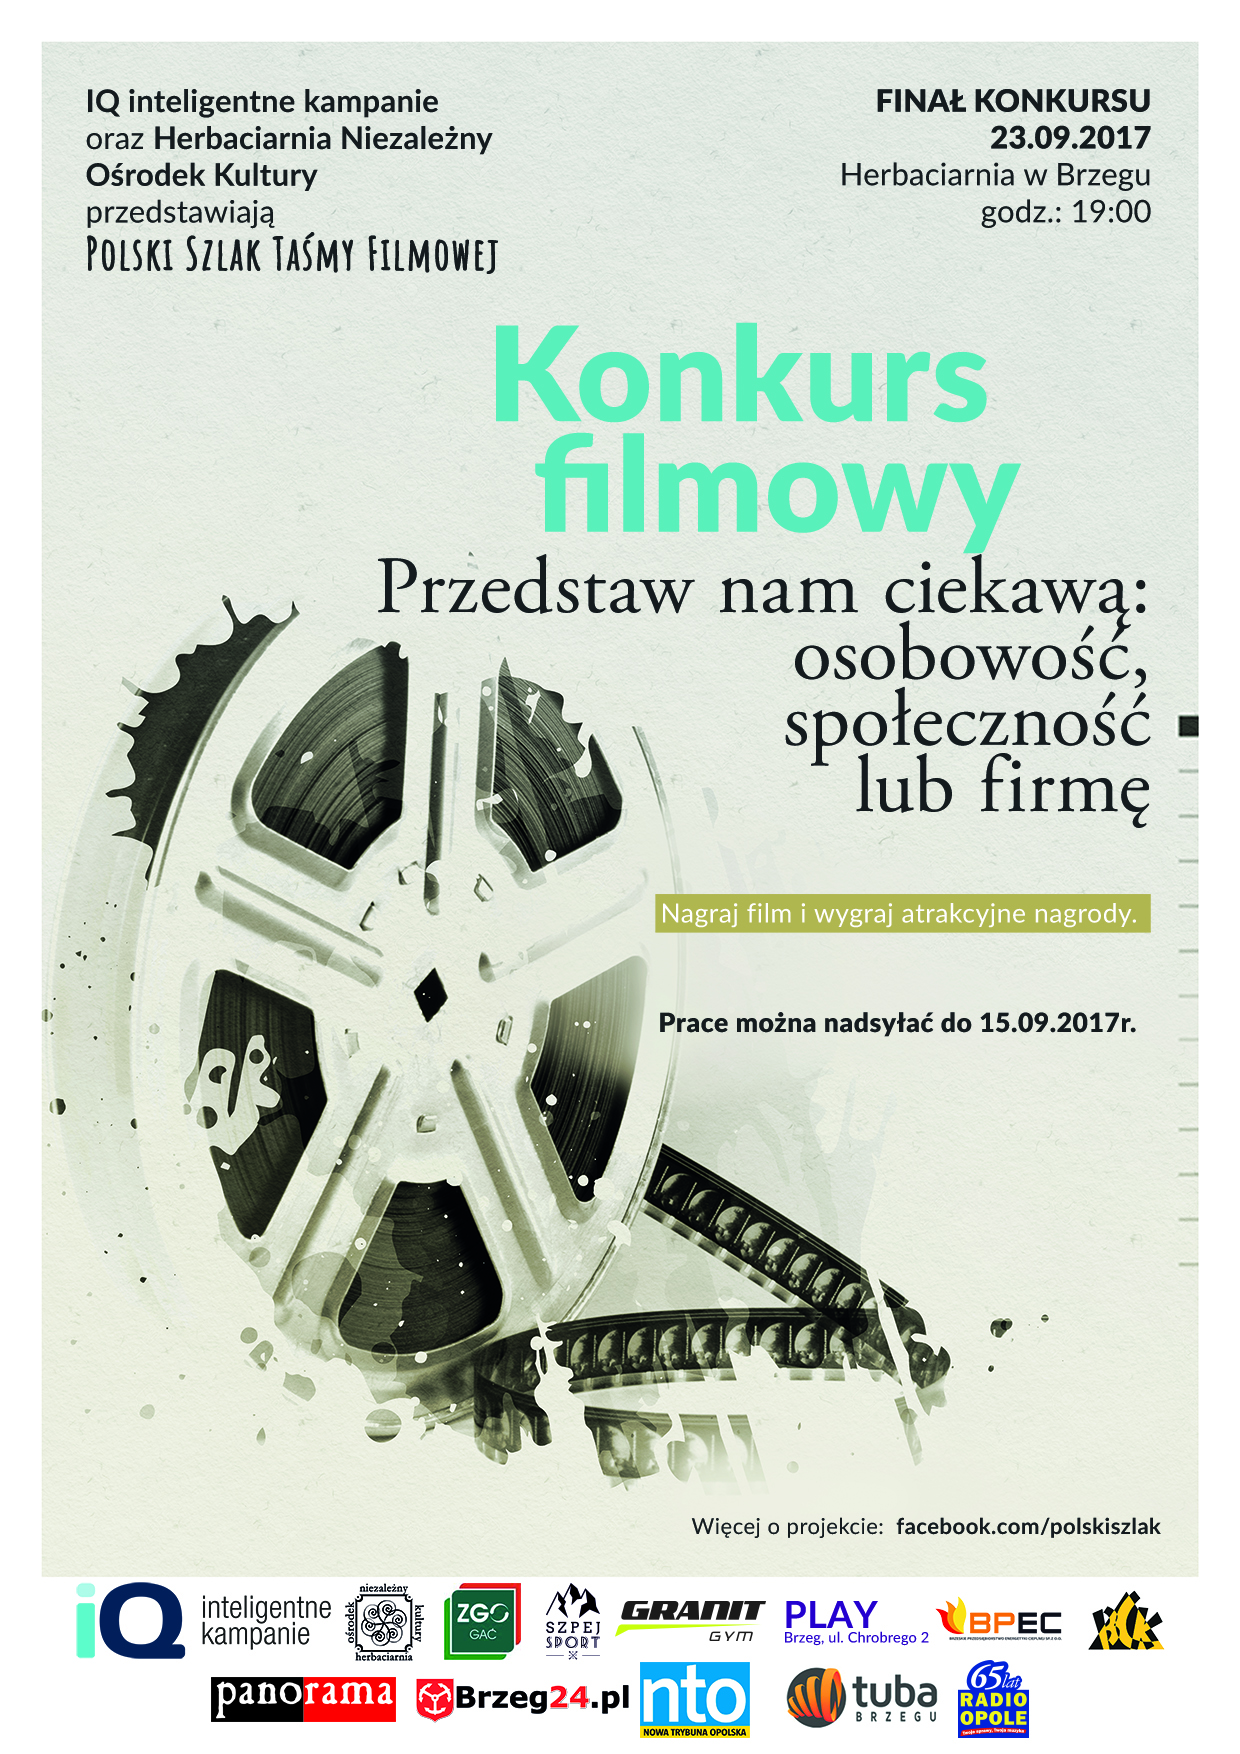 Konkurs filmowy 'Polski Szlak Taśmy Filmowej'